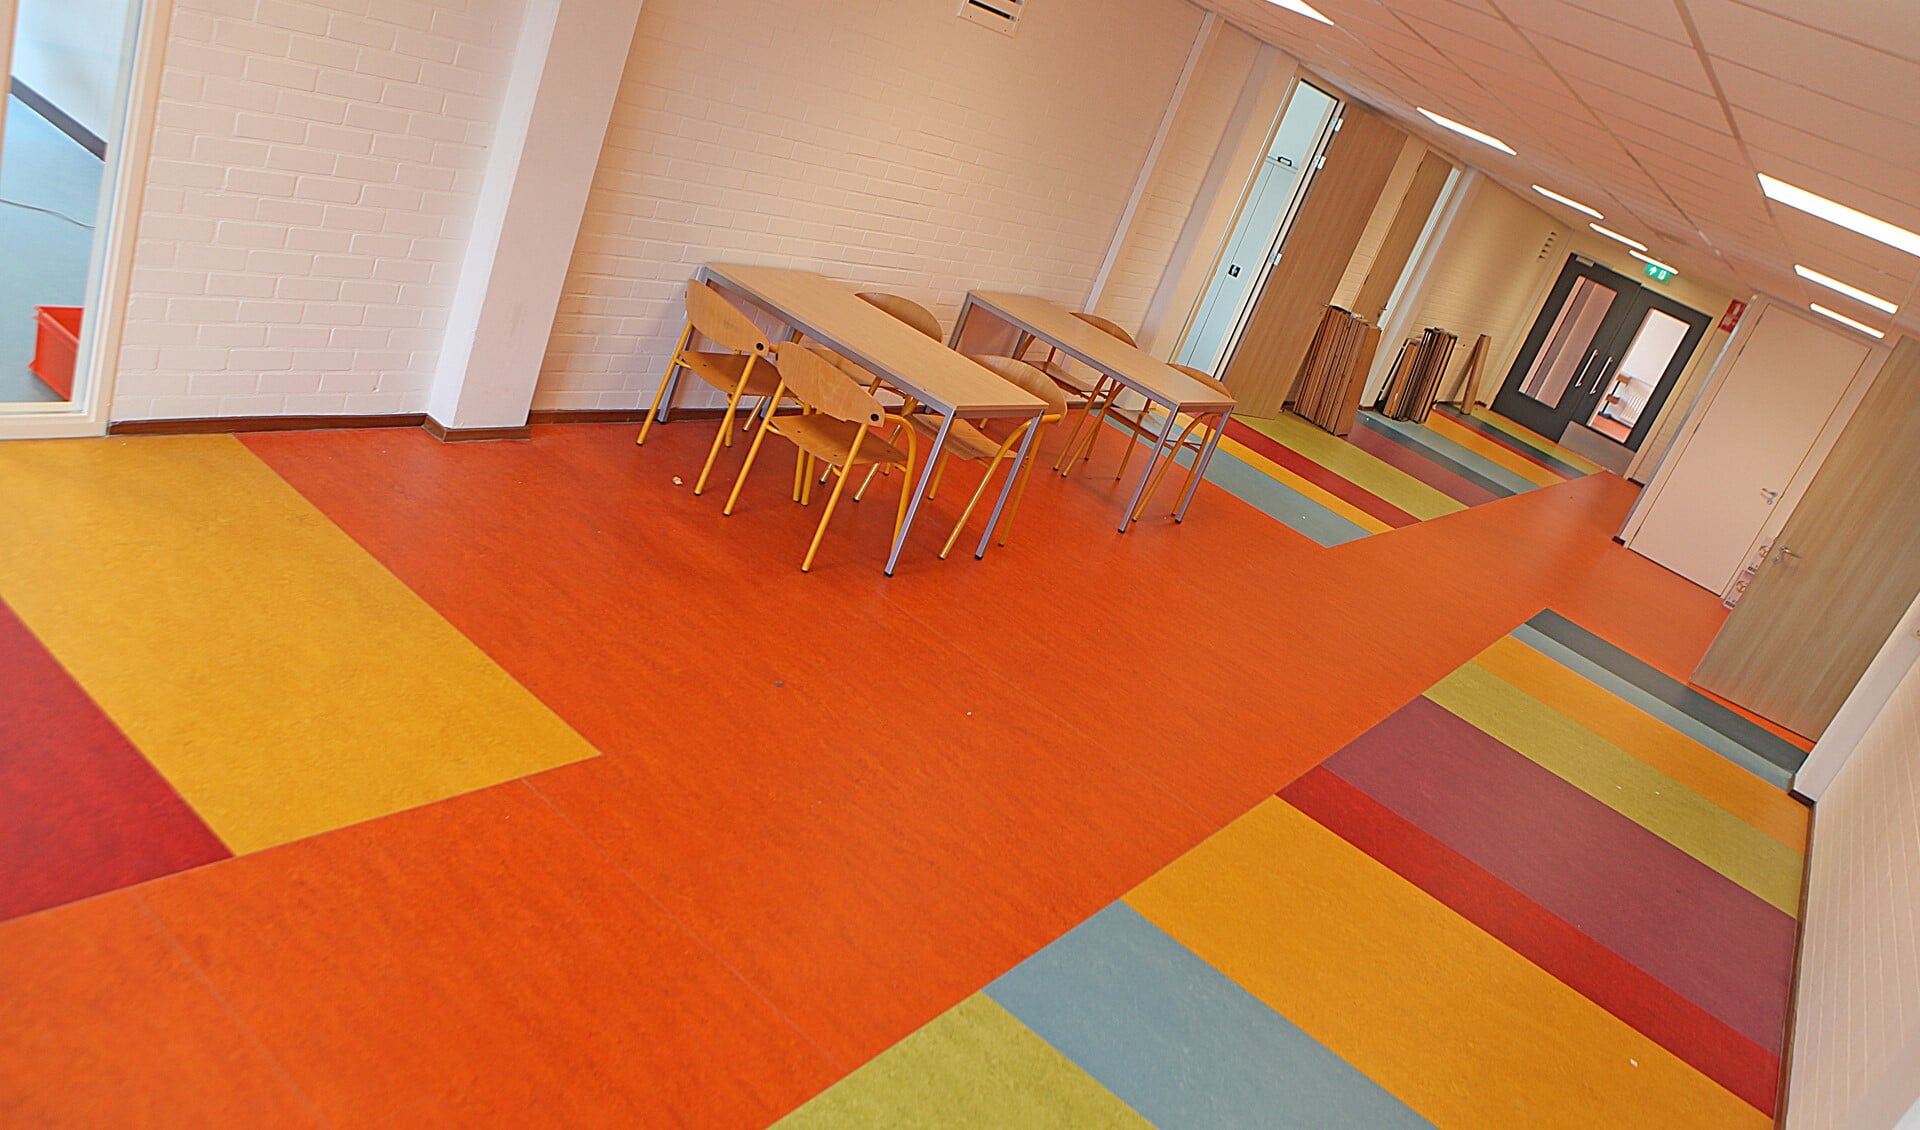 De school is van binnen compleet gerenoveerd, met onder meer nieuwe vloerbedekking. 